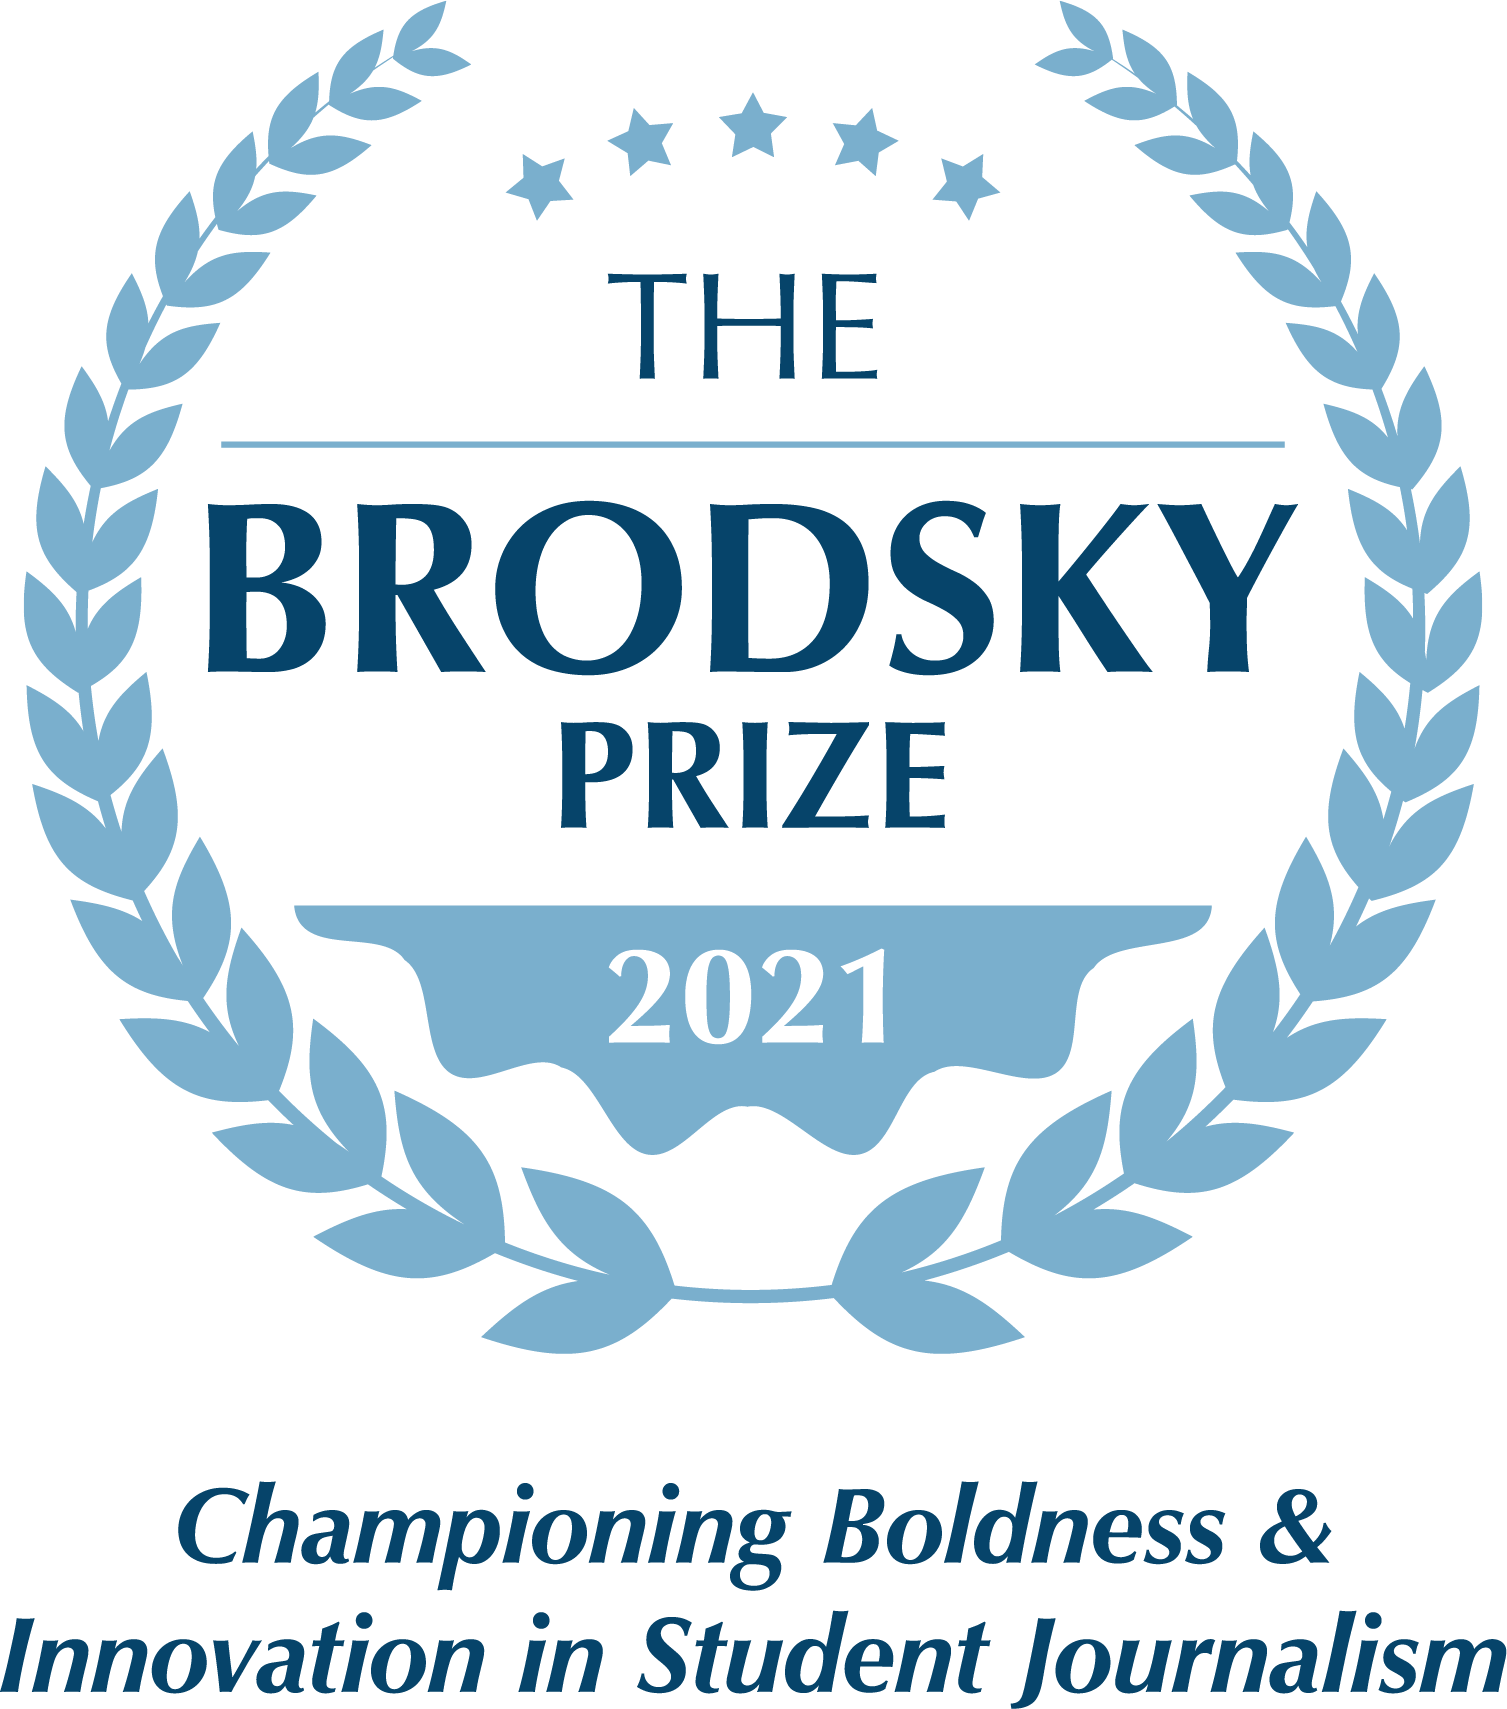 The Brodsky Prize